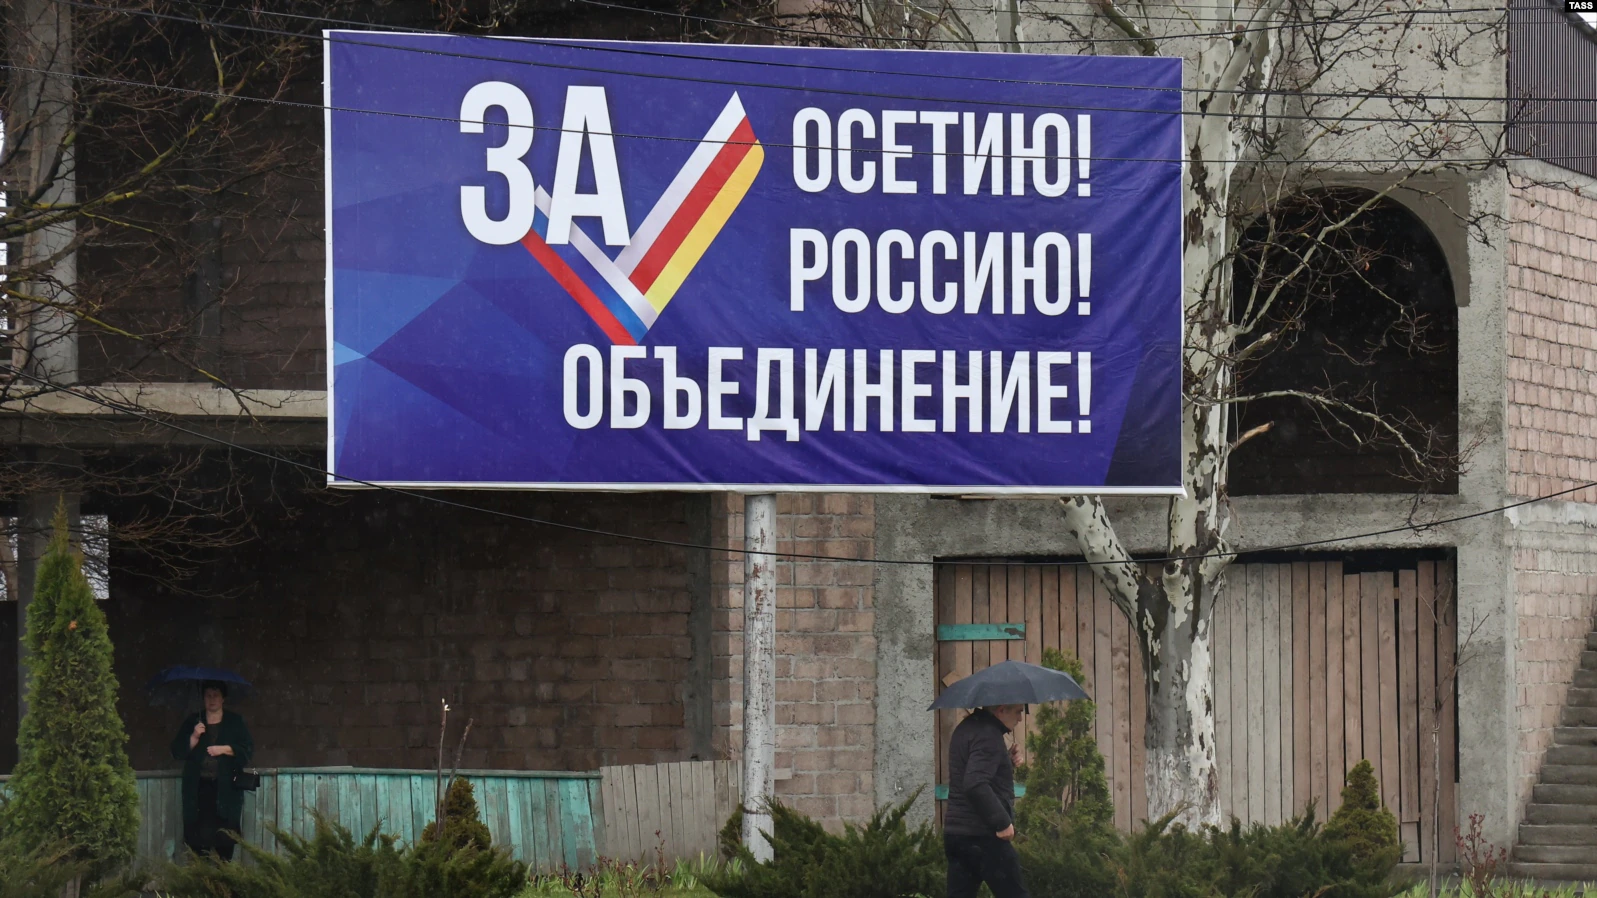 Die Republik Südossetien hat ihre Integration in Russland pausiert.